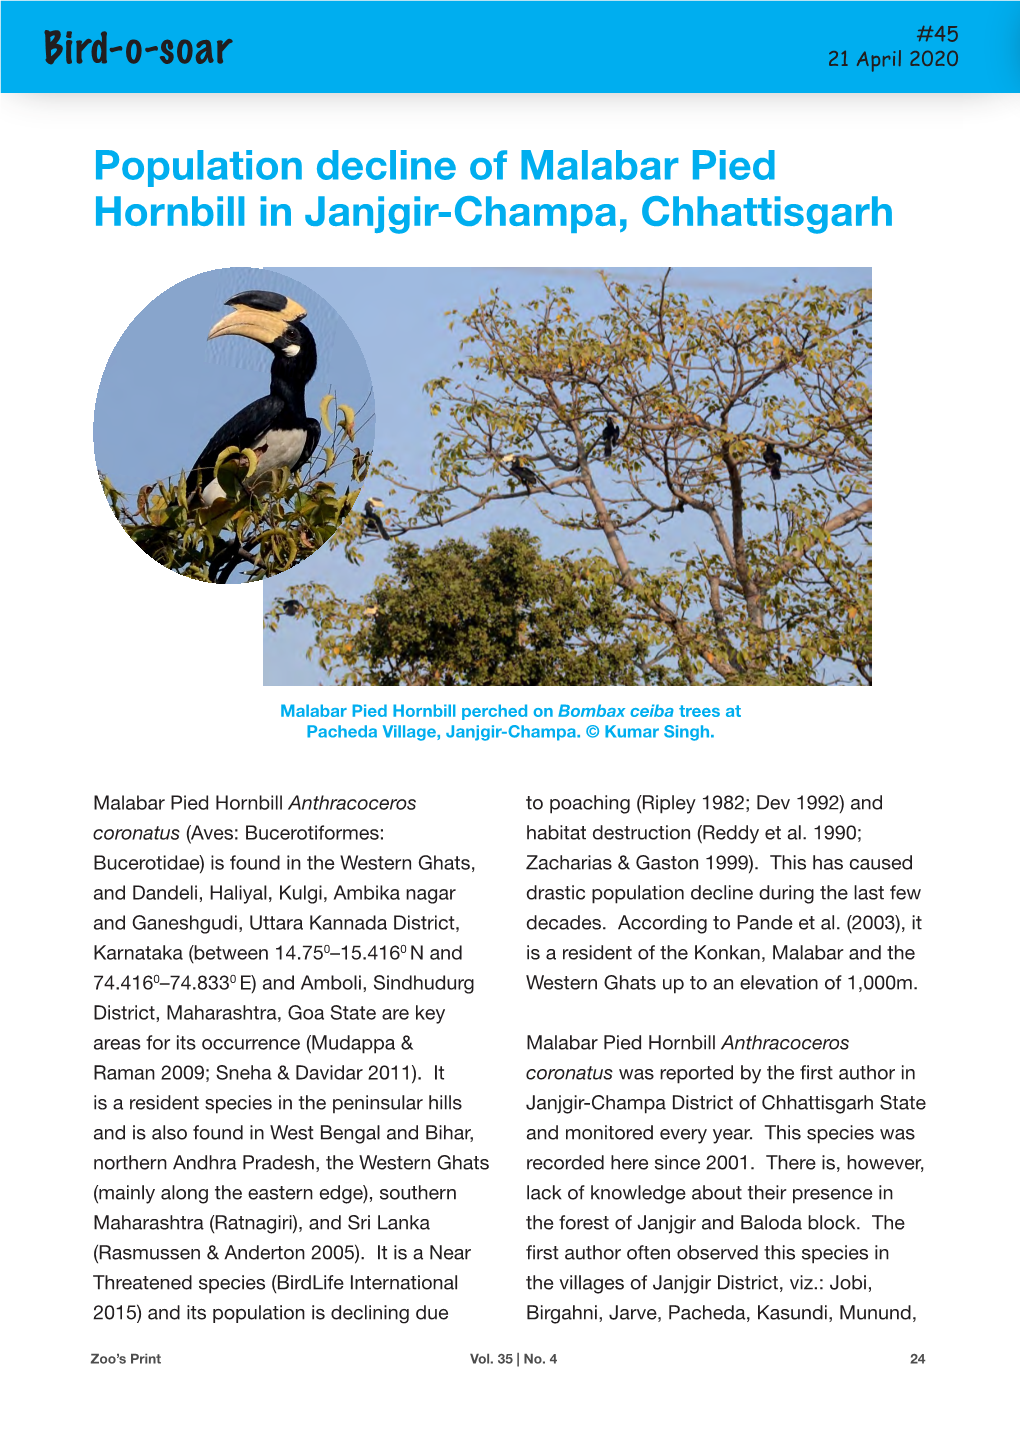 Bird-O-Soar Population Decline of Malabar Pied Hornbill in Janjgir-Champa, Chhattisgarh